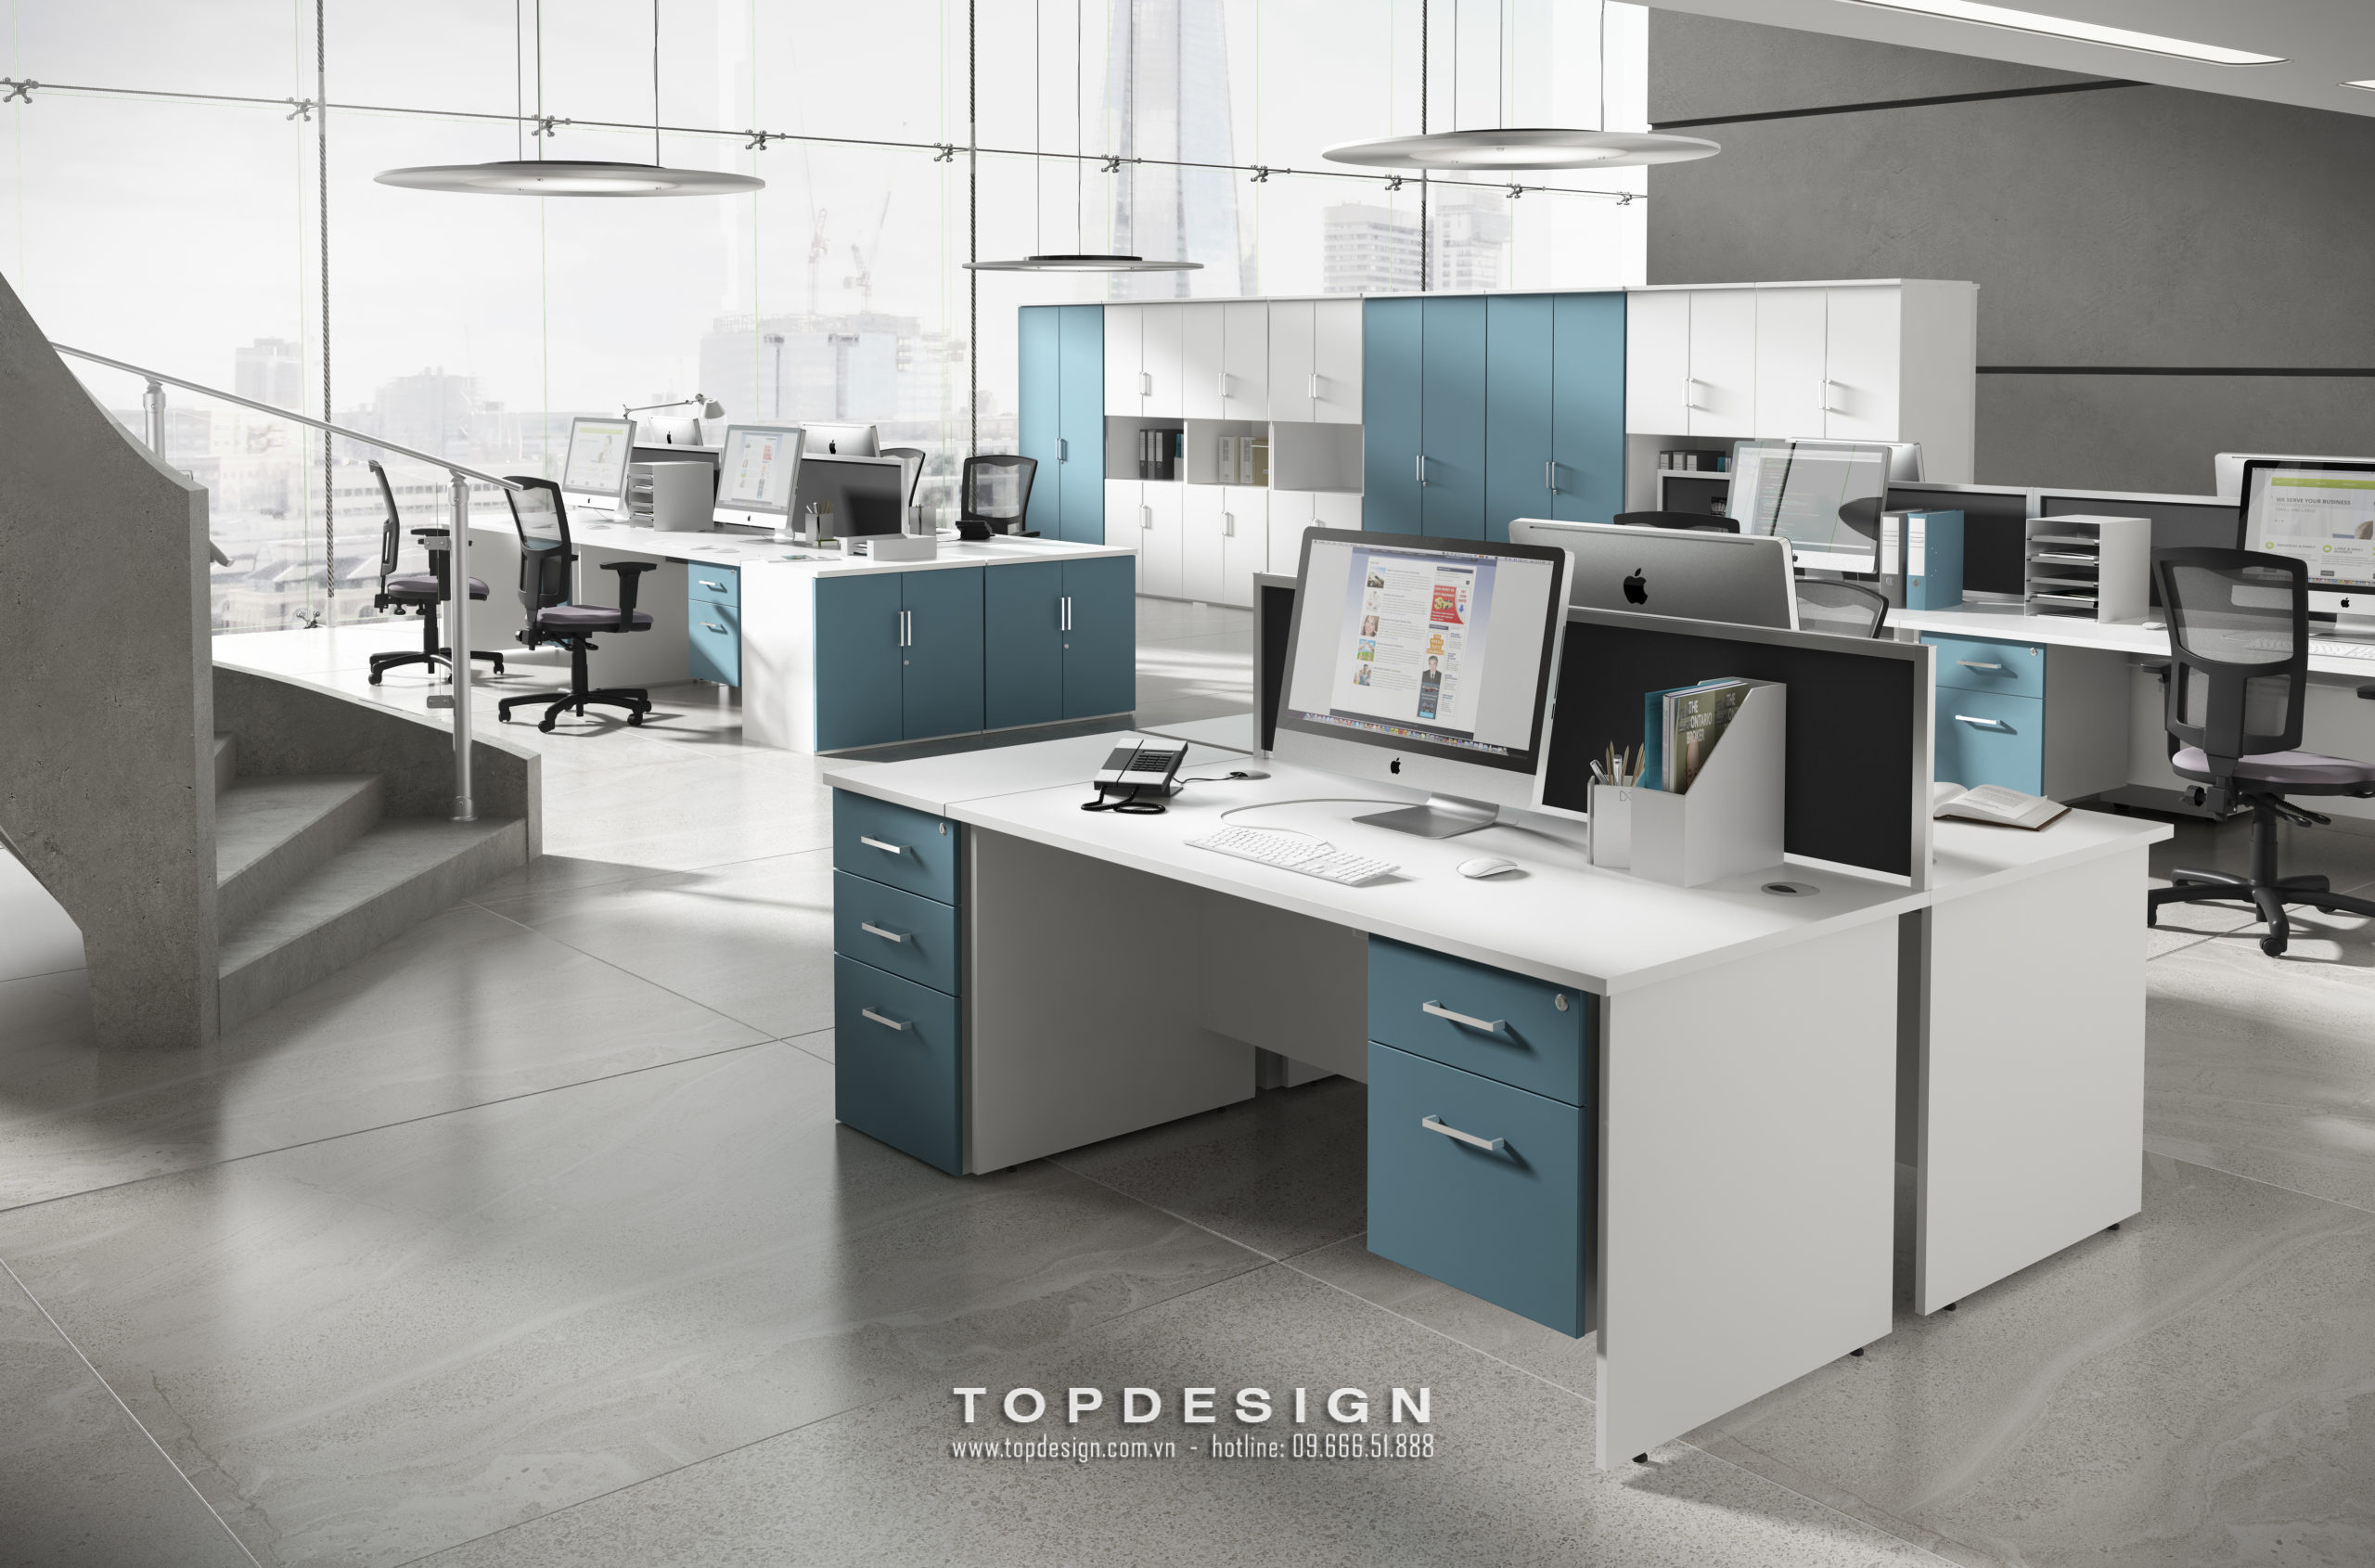 5.Thiết kế văn phòng hiện đại, theo hình thức module_TOPDESIGN